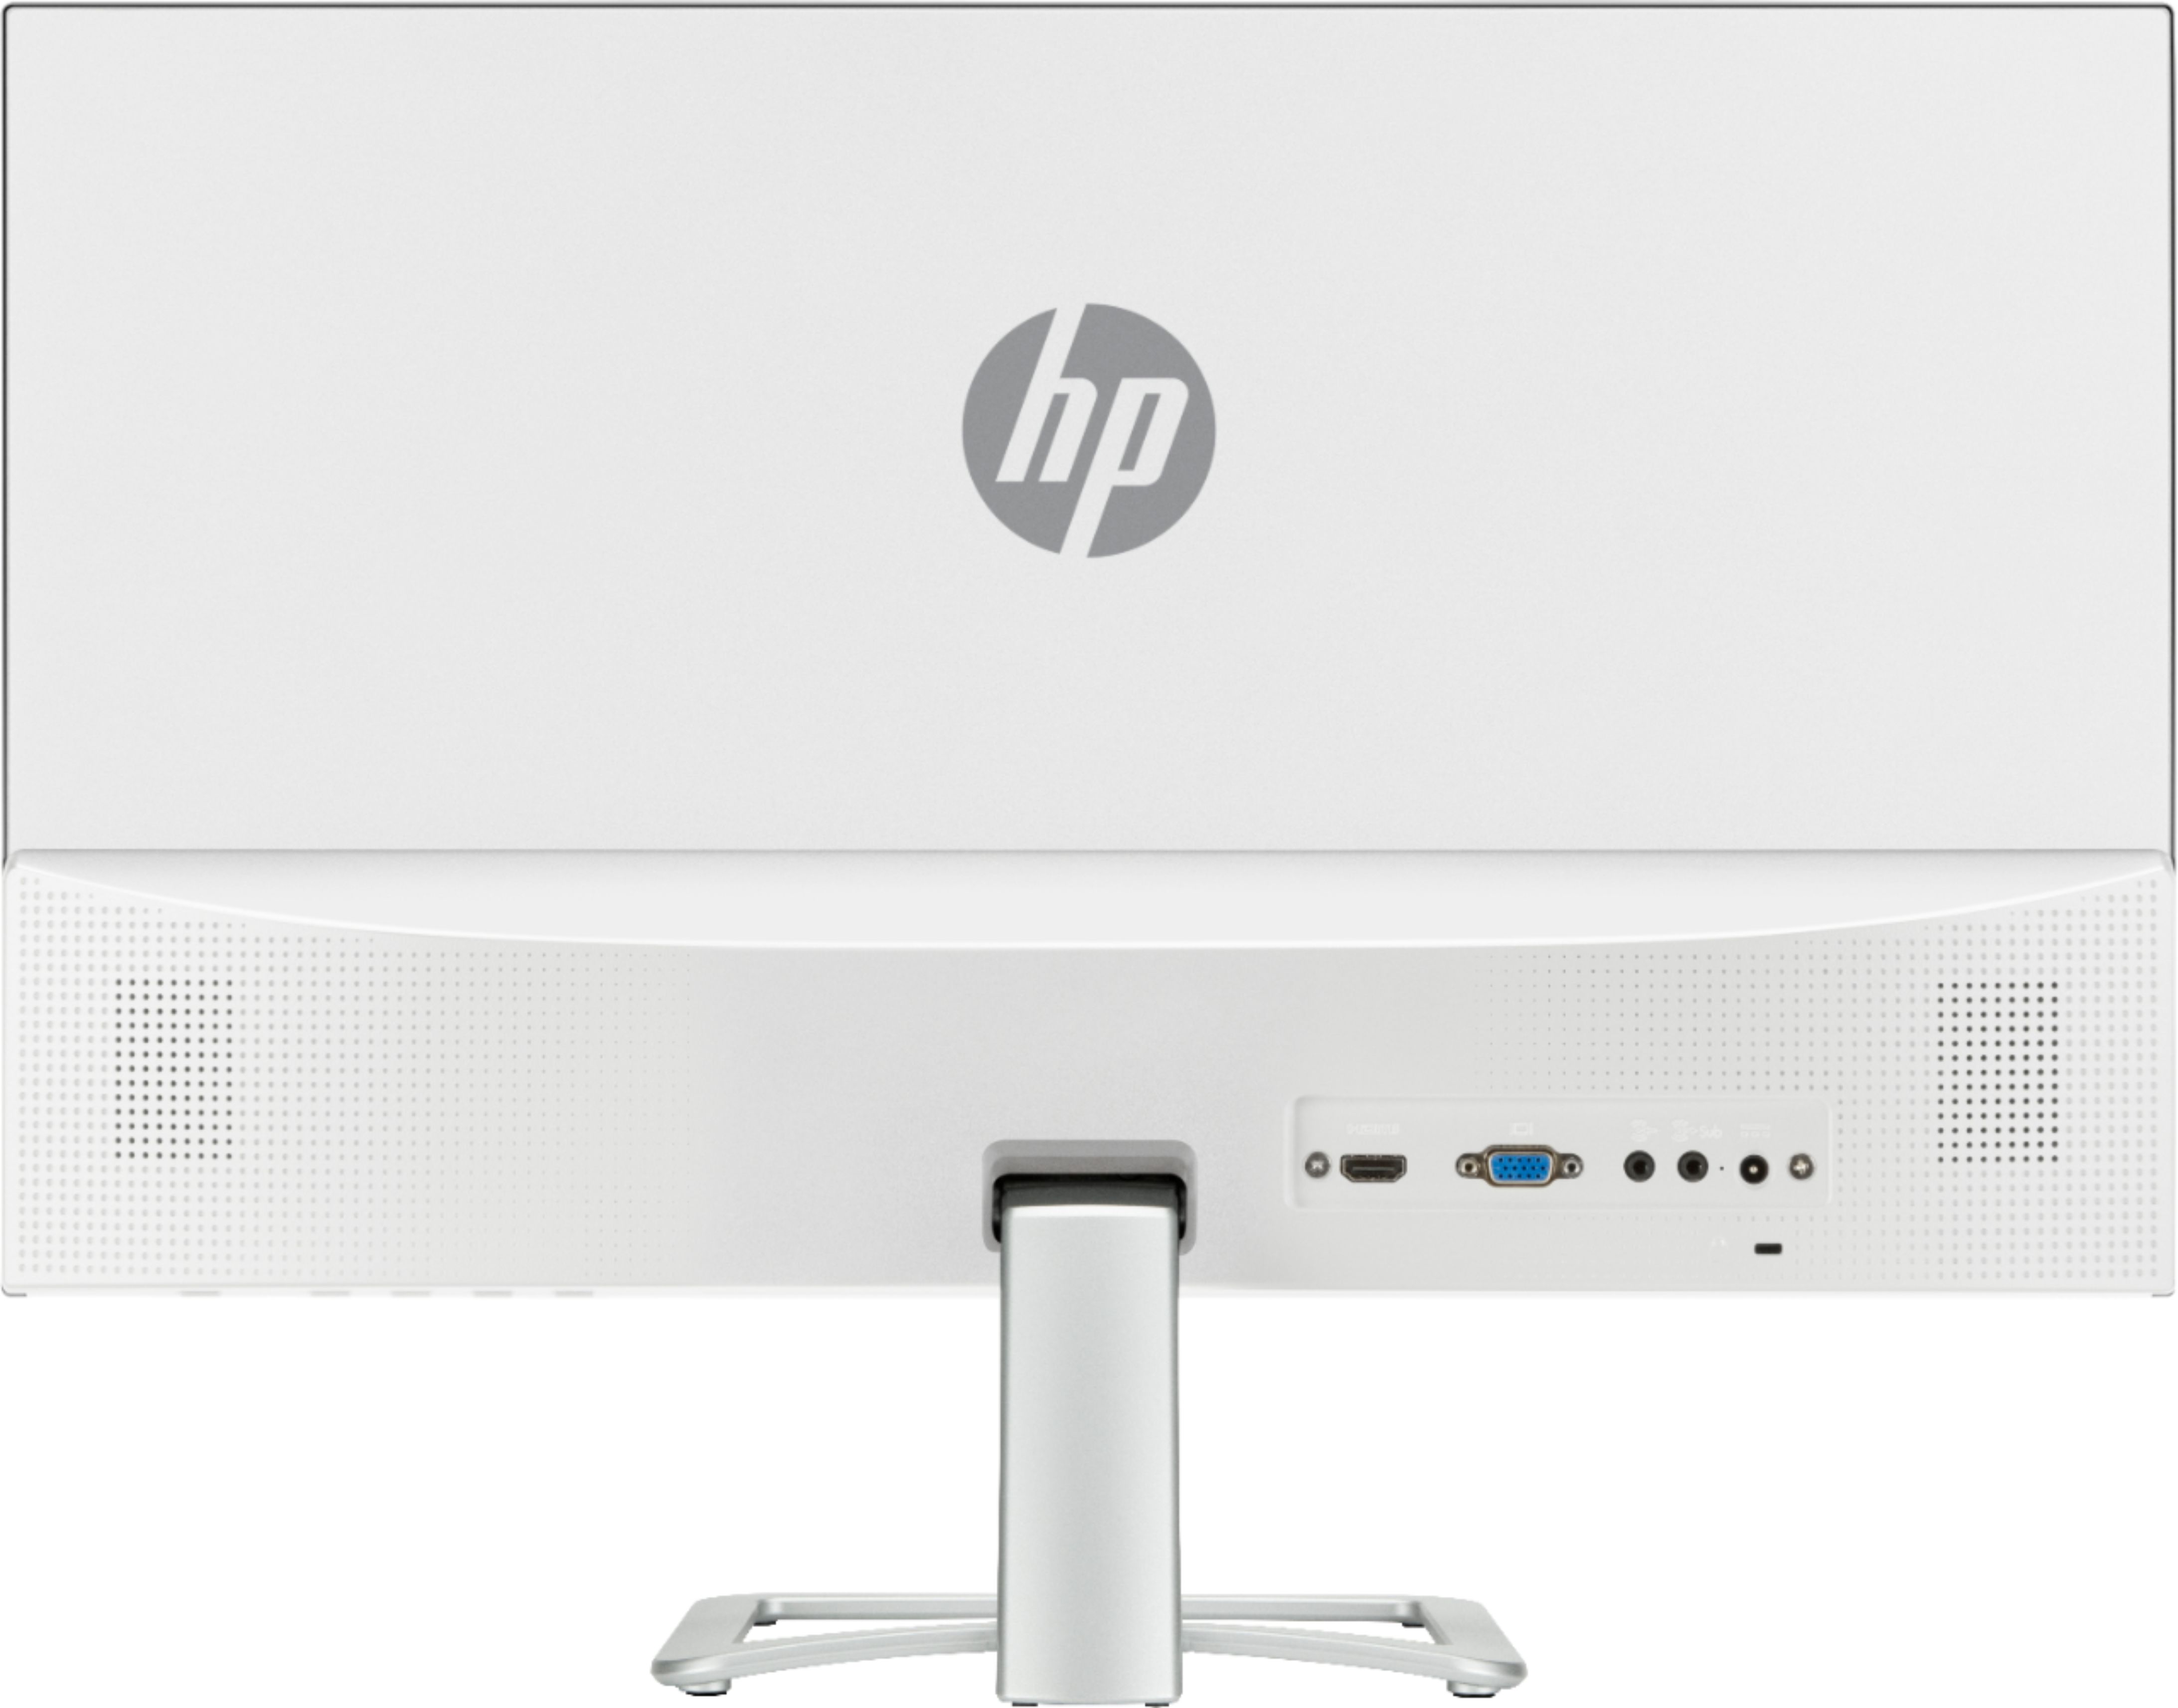 Back View: HP - 24ea 23.8" IPS LED Full HD Monitor (VGA, HDMI) - Silver